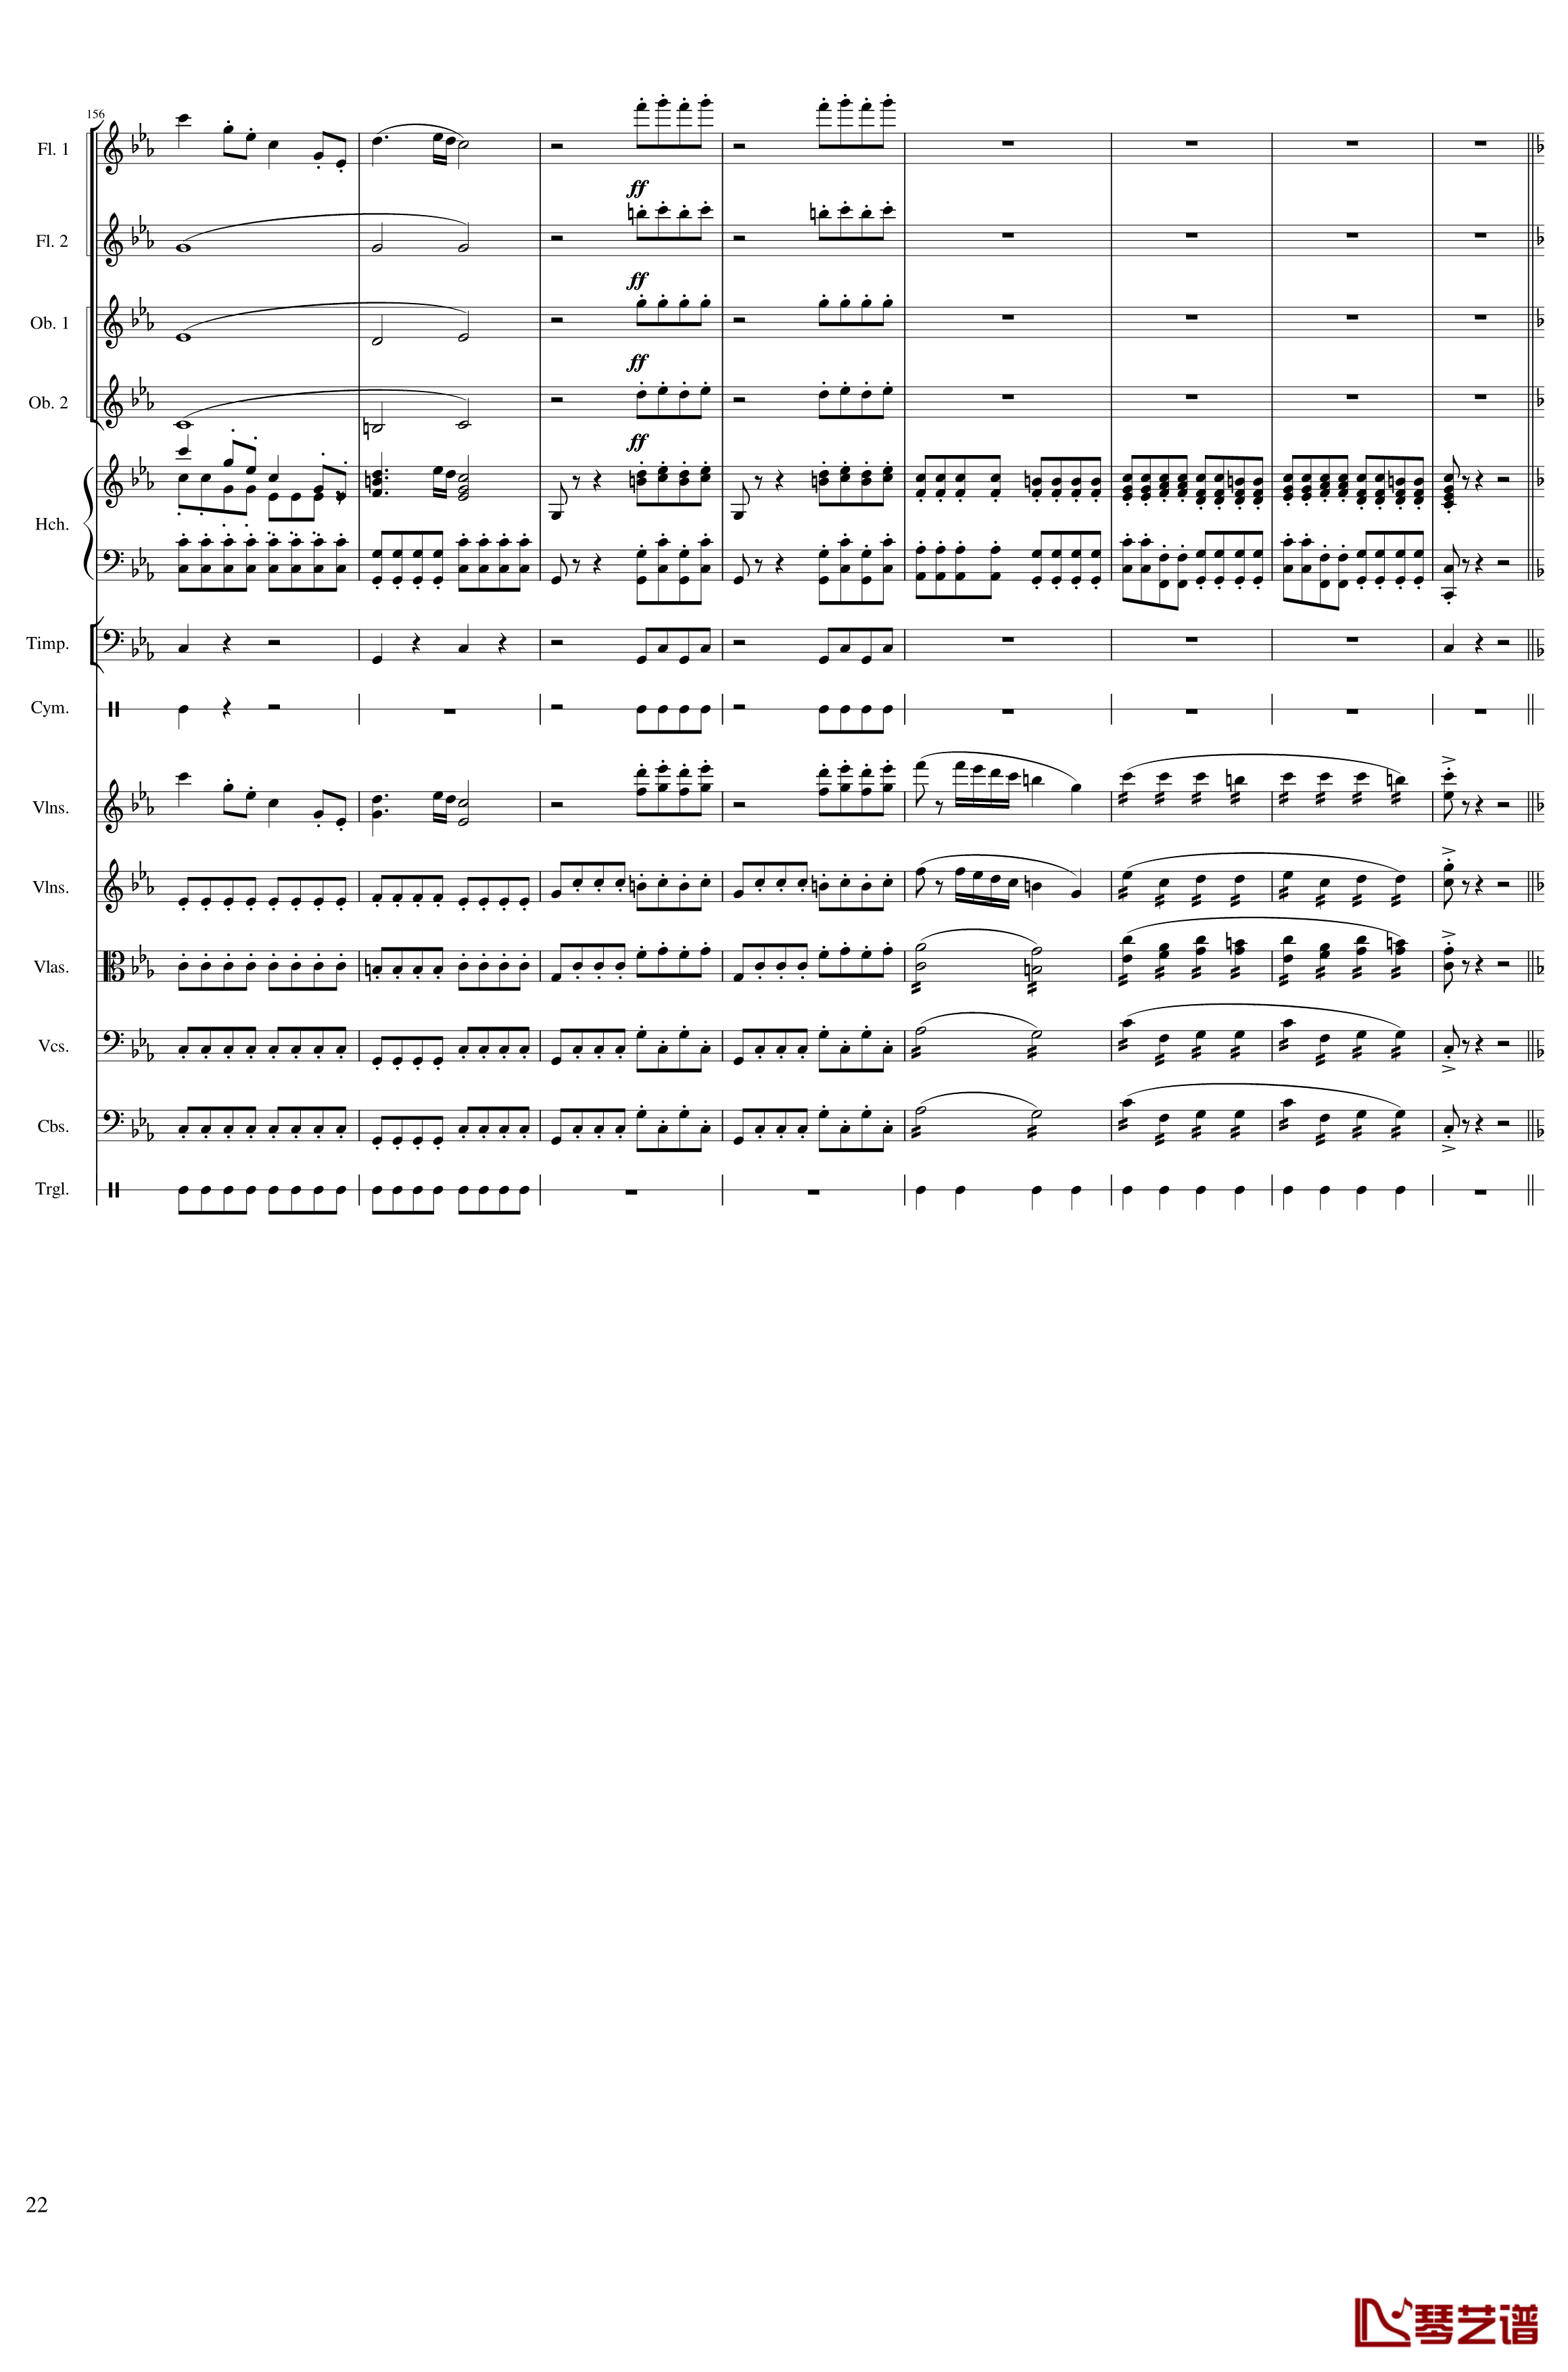 春节序曲钢琴谱-作品121-一个球22